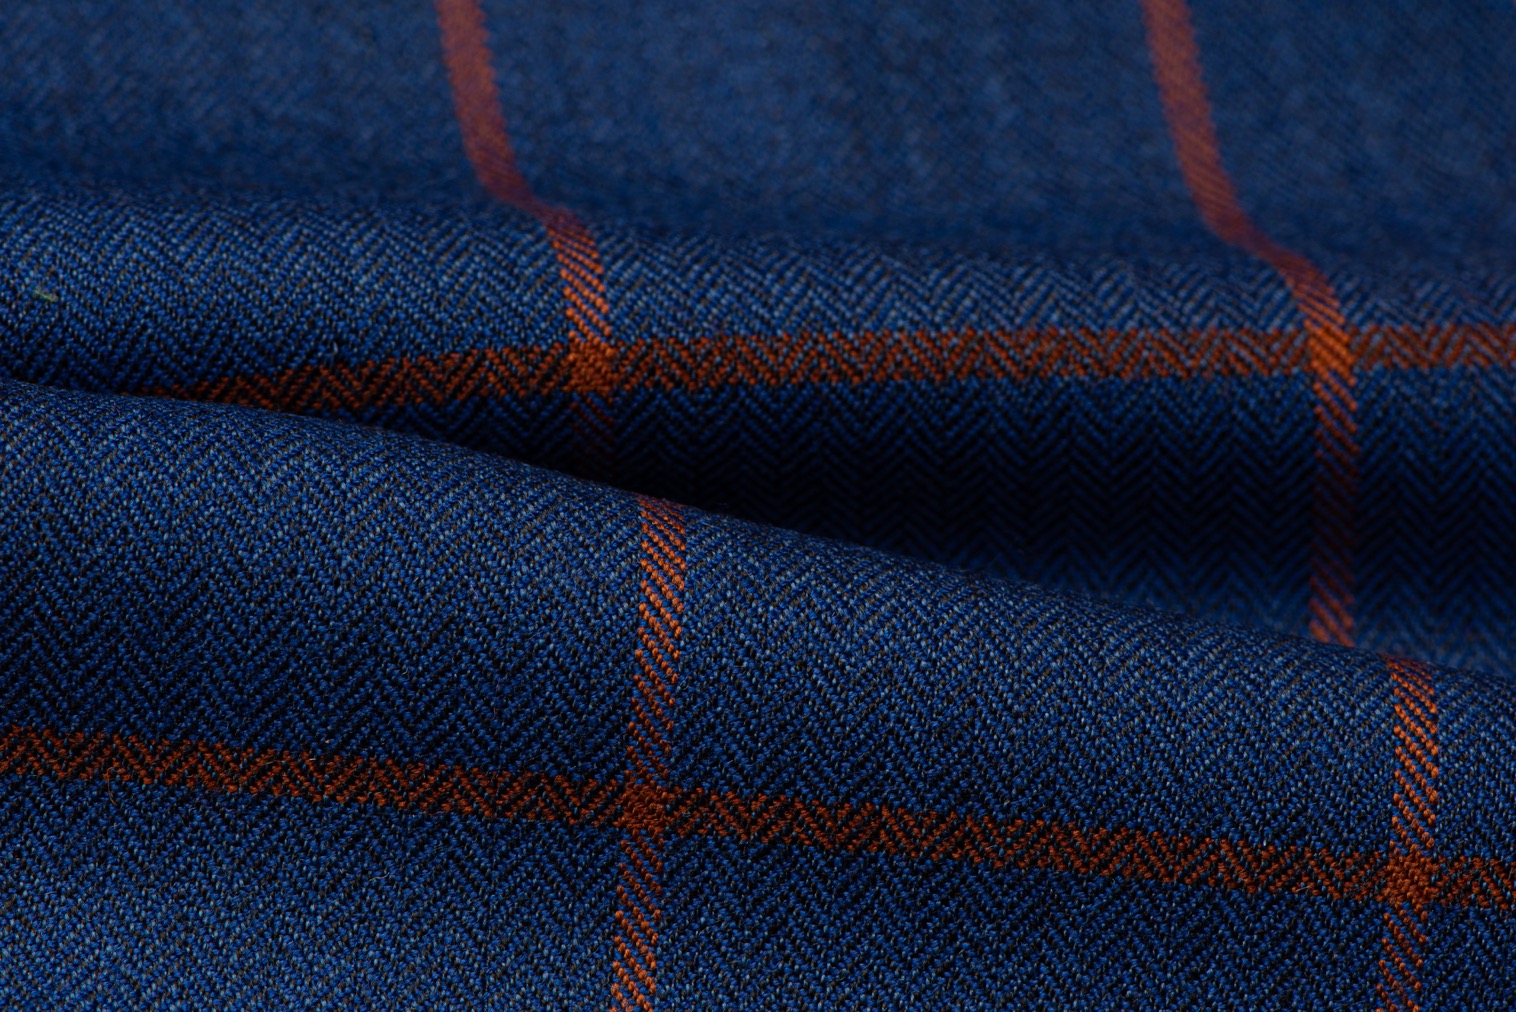 H1402 - Royal Blue W/ Orange Check - 340gms (High Twist Wool ...